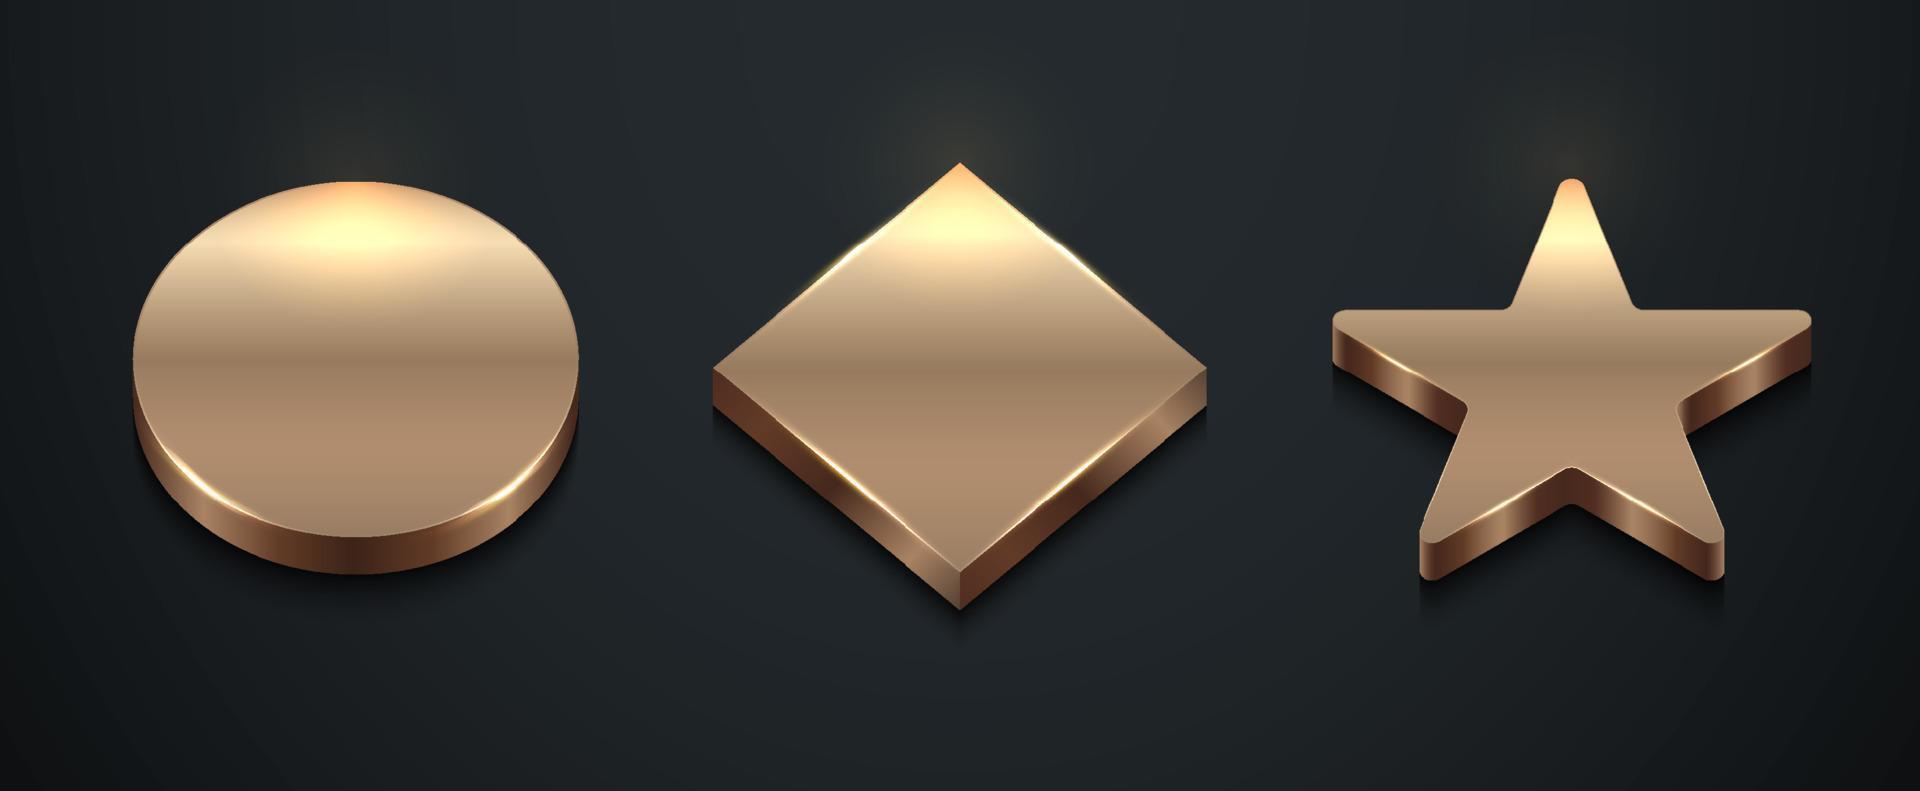 conjunto de círculos geométricos dorados 3d realistas, objetos de formas cuadradas y estrellas en un estilo de lujo de fondo negro vector